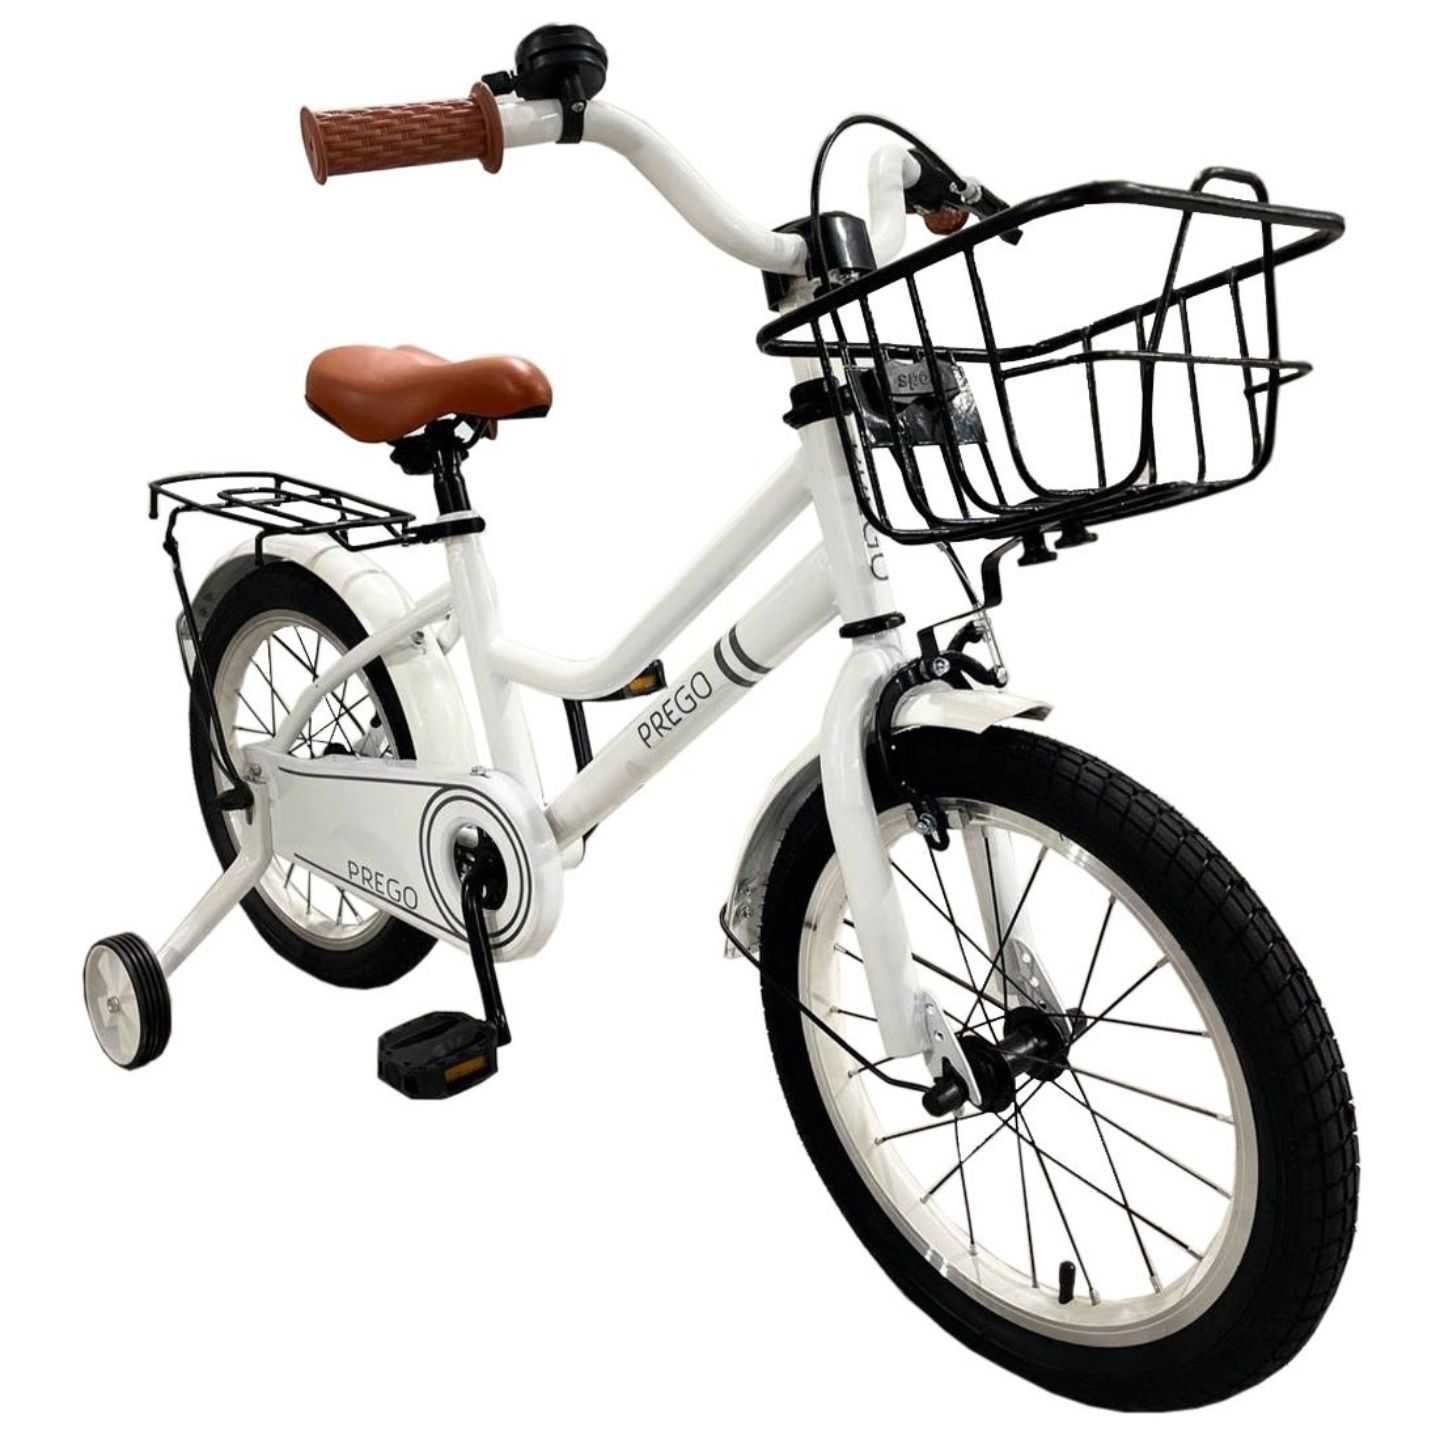 Детский двухколесный велосипед Prego Retro